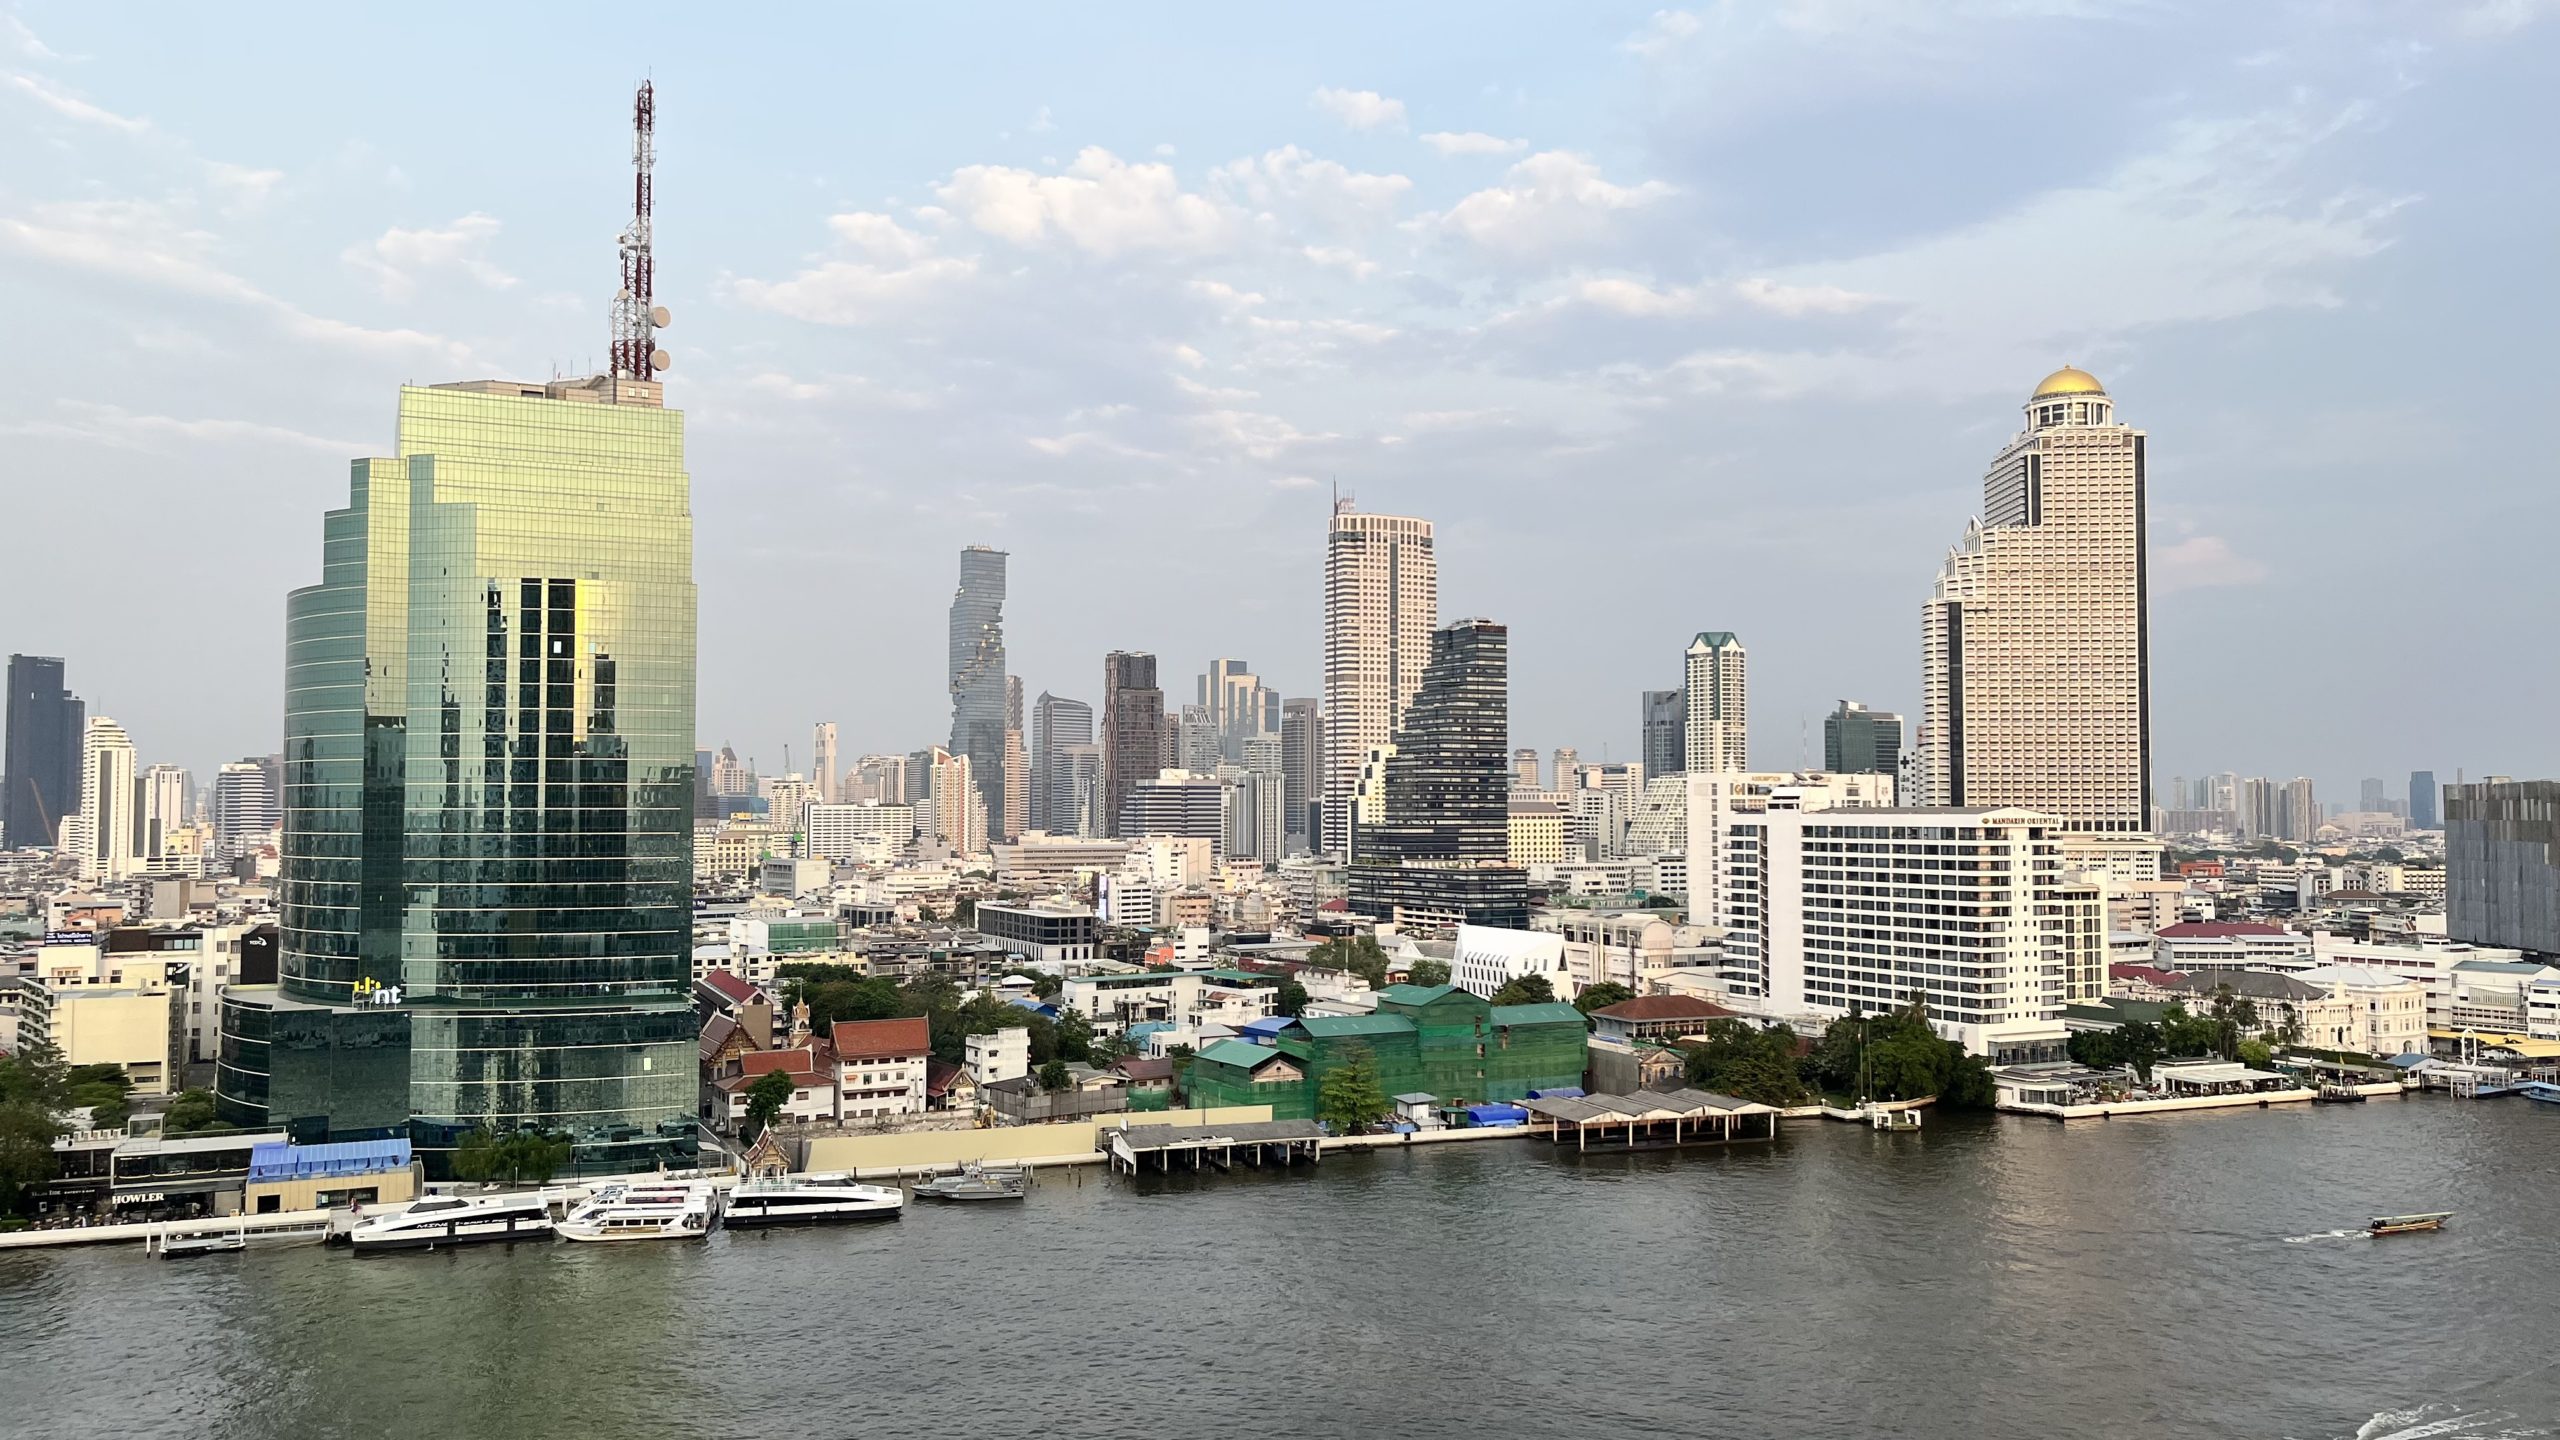 Bangkok river and city view